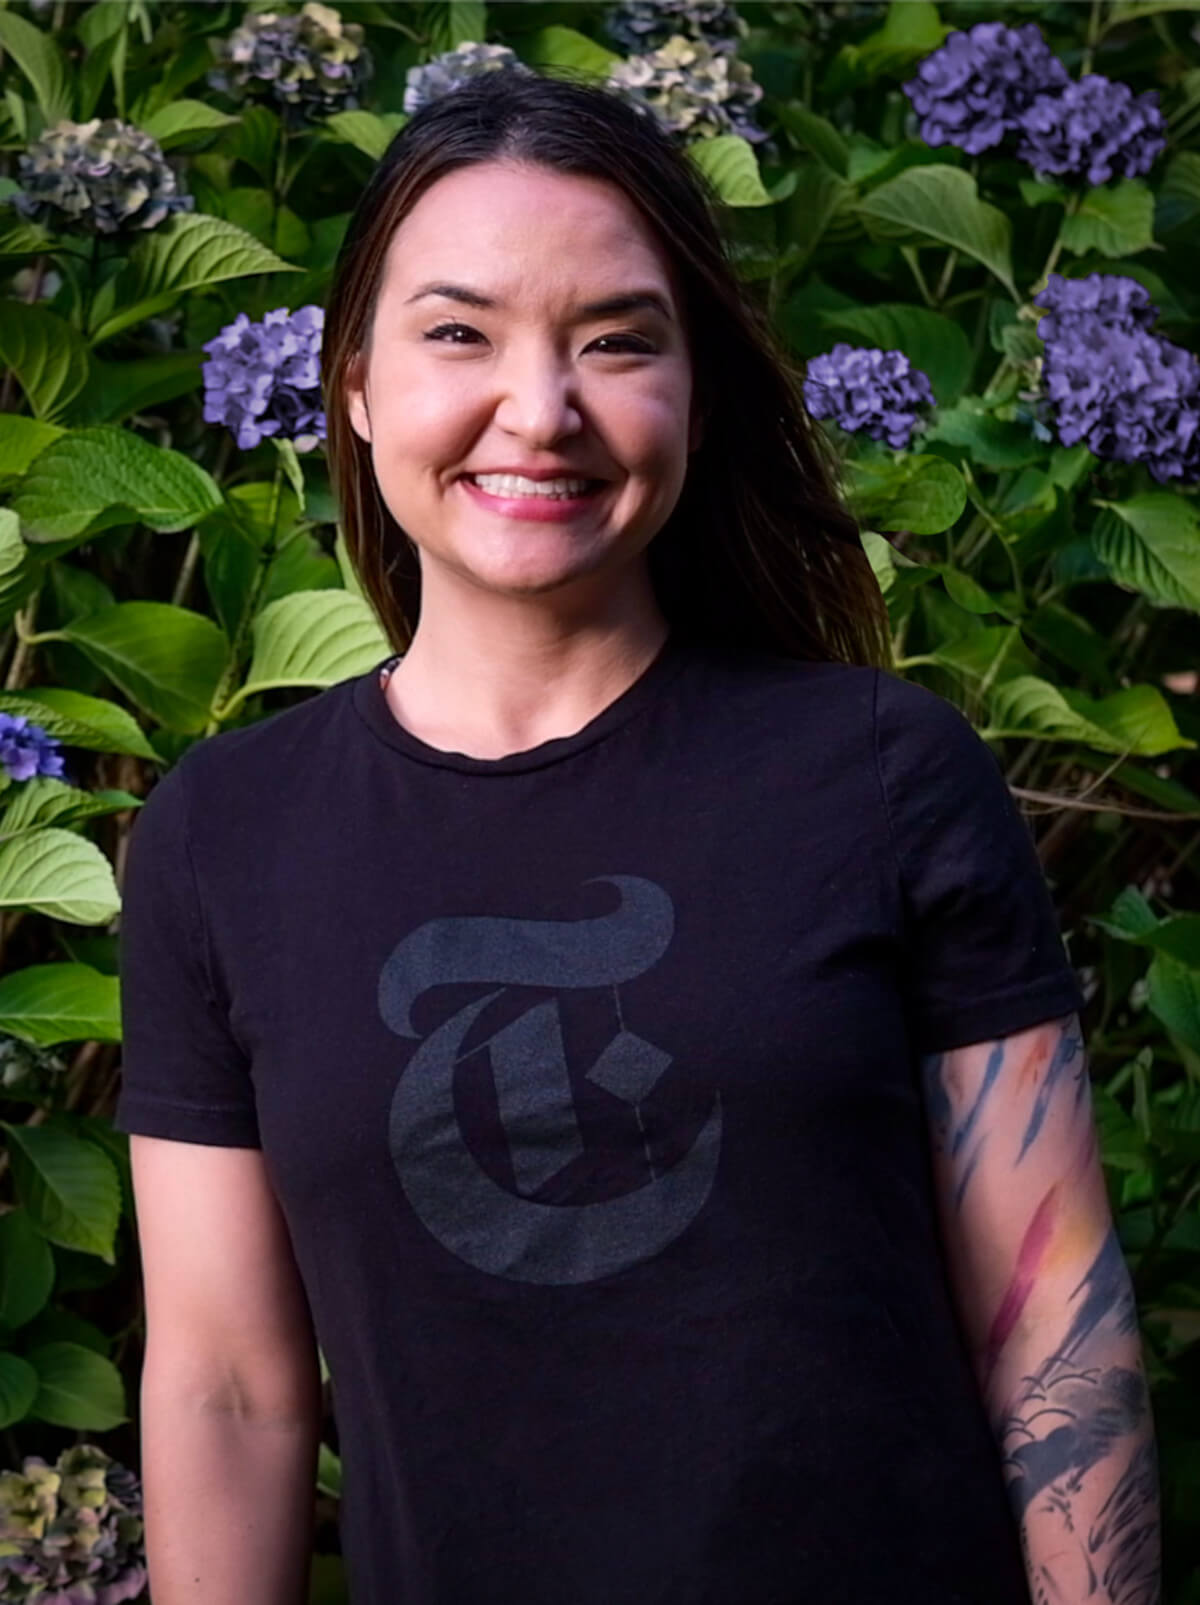 DigiPen graduate Romina Barrett wearing a New York Times logo t-shirt.